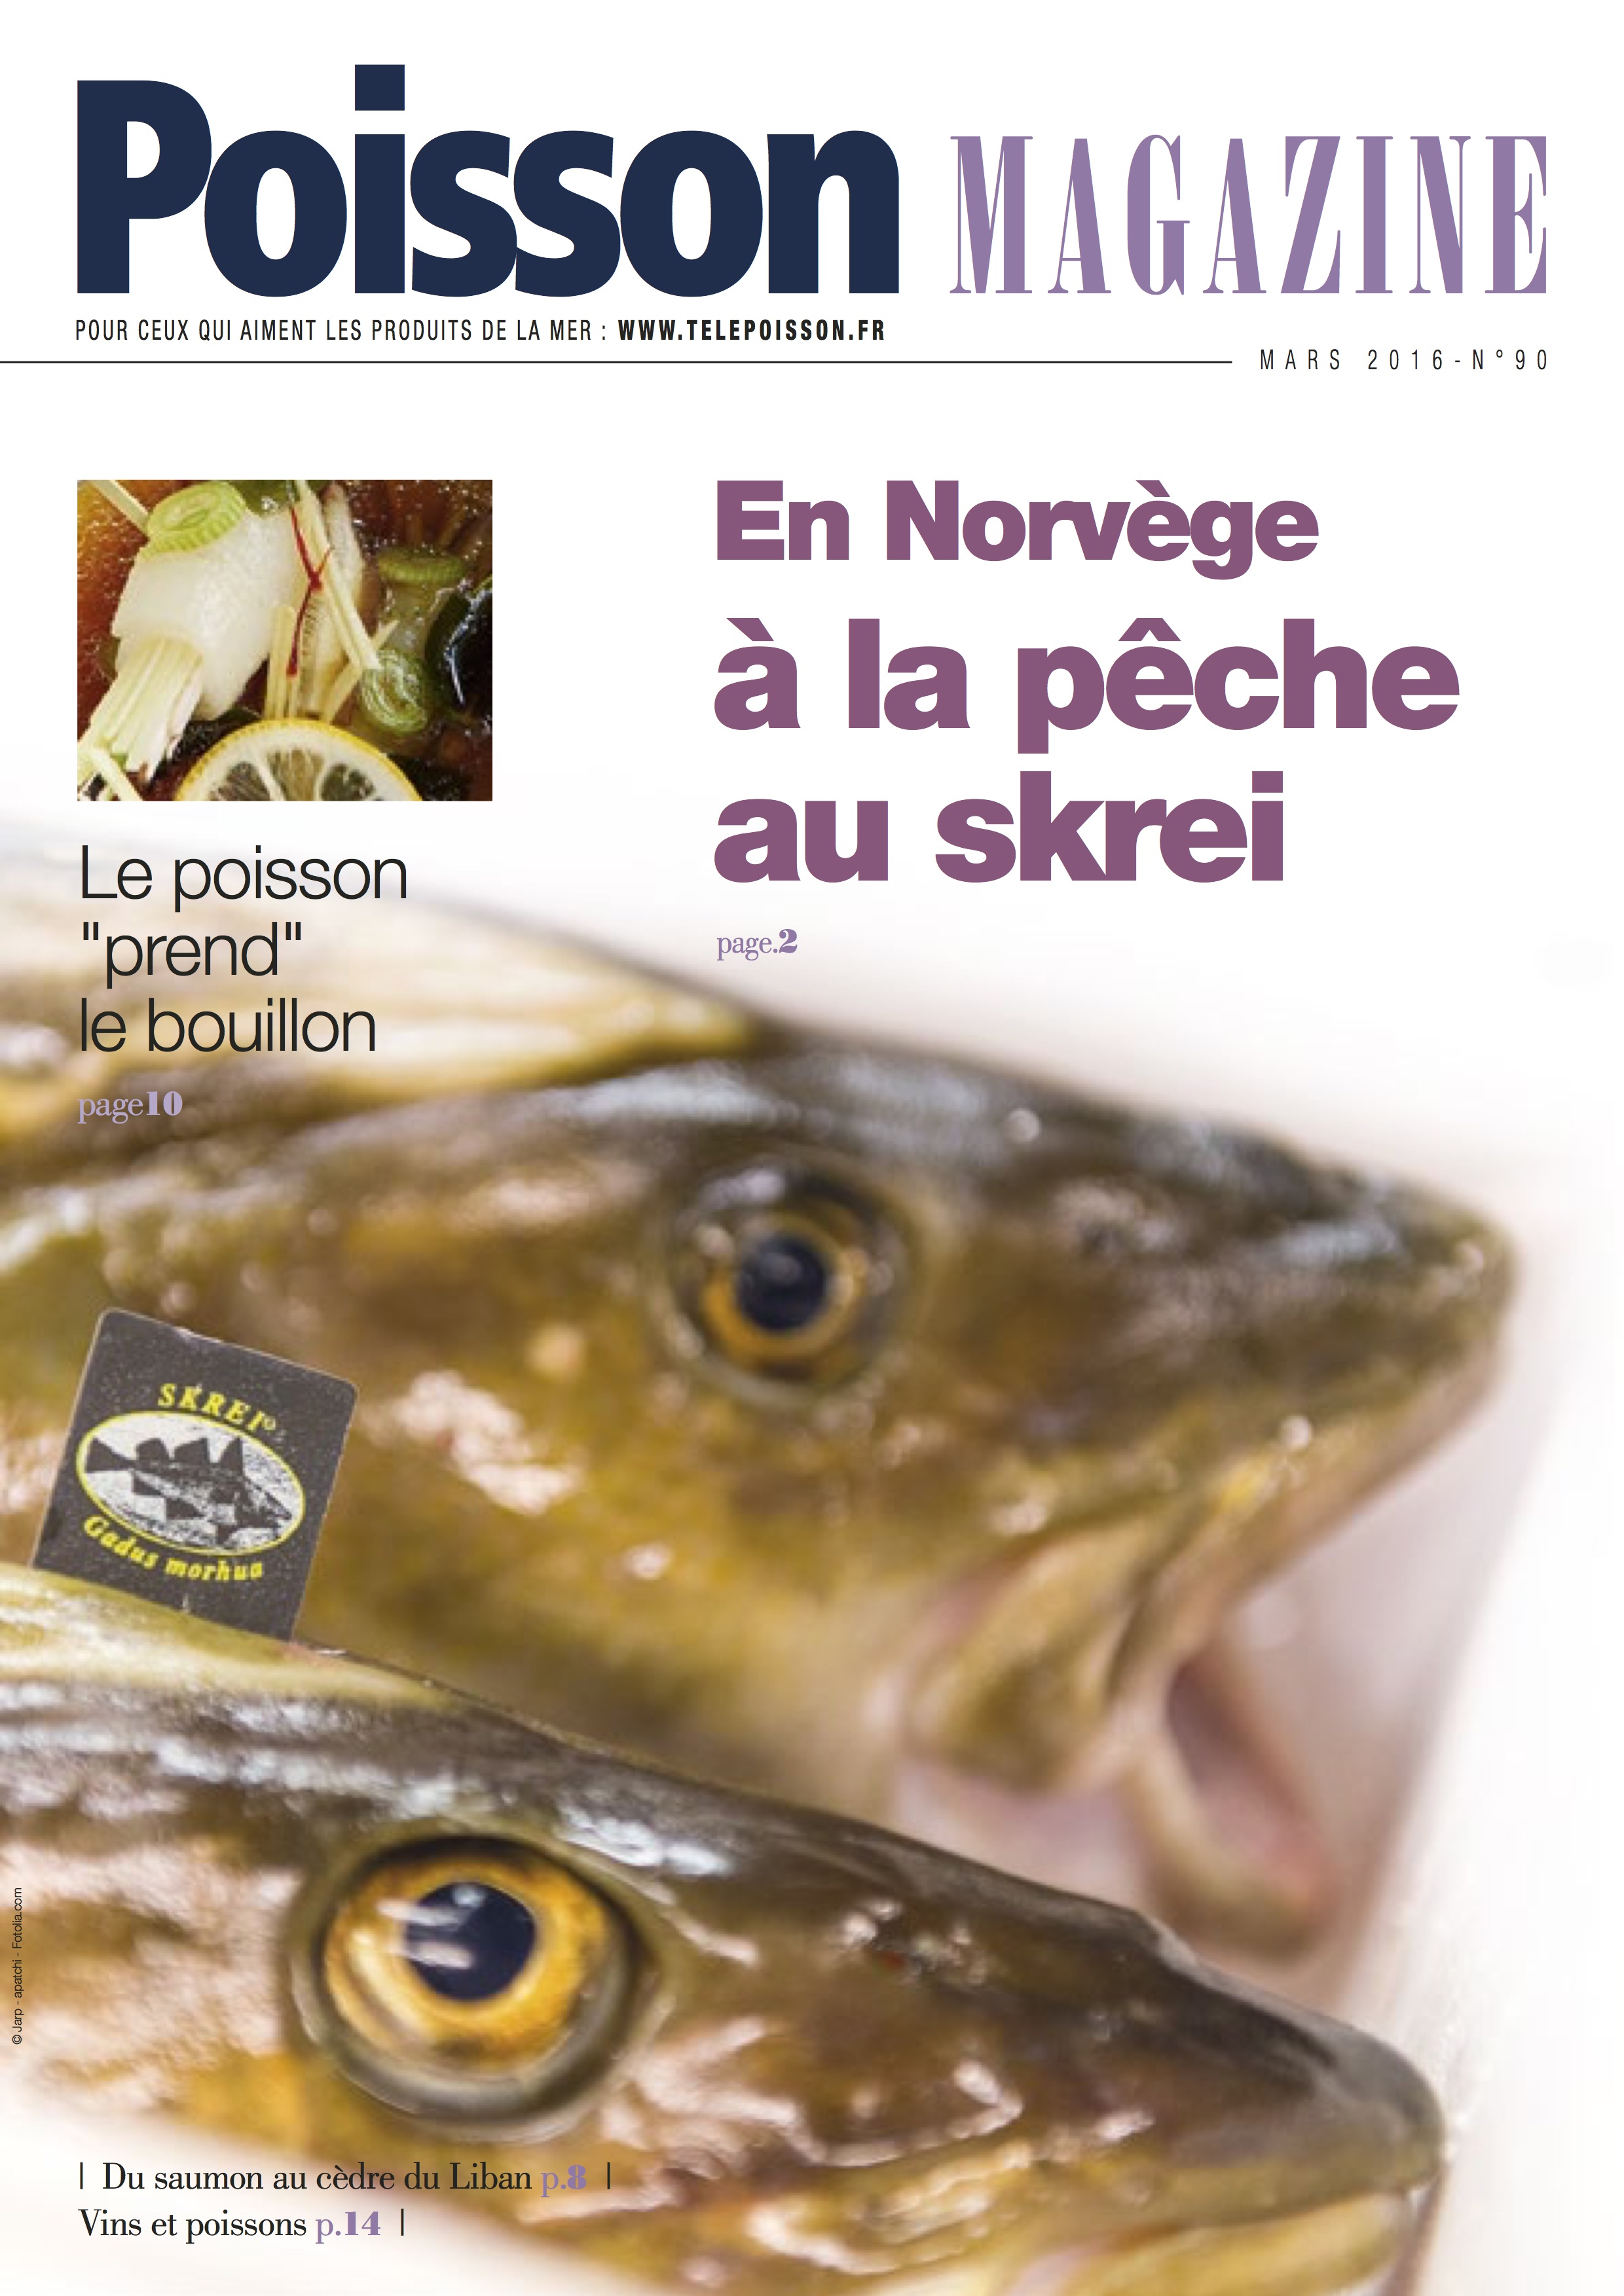 Poisson Magazine